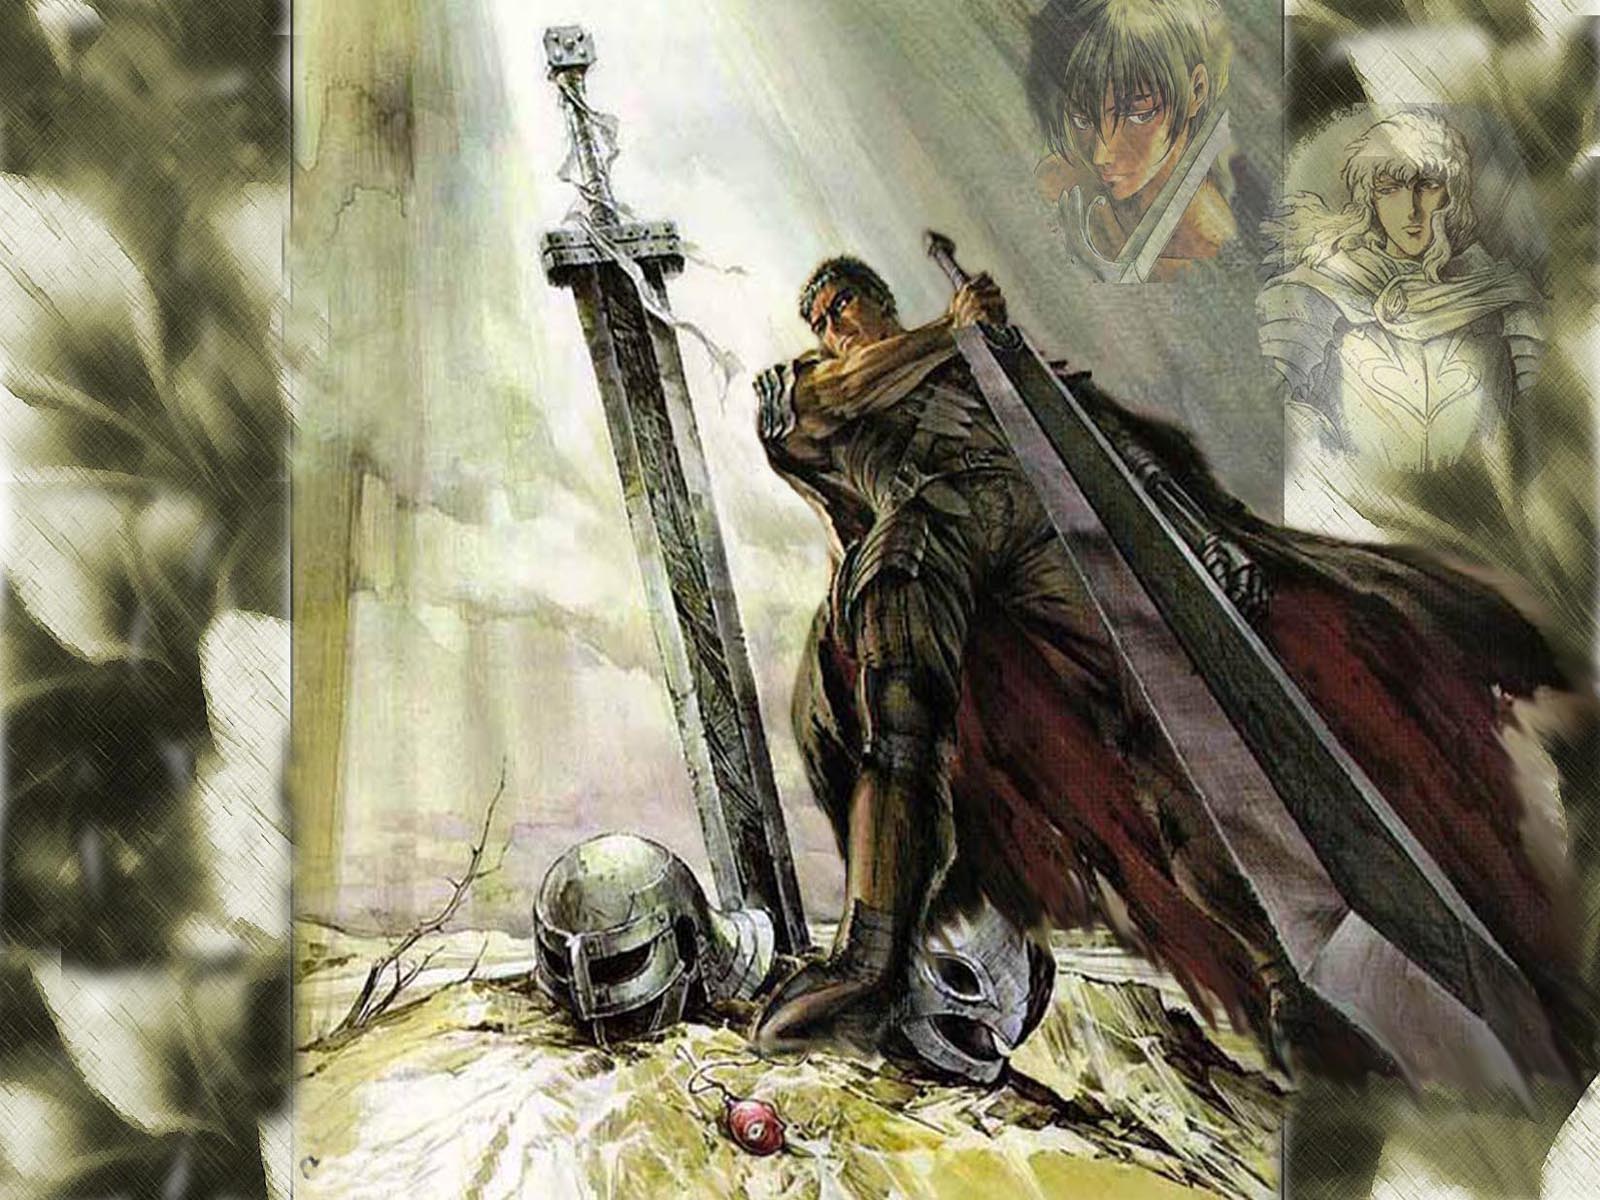 Berserk guts sword weapon fantasy wallpaper 1600x1200 75935 1600x1200